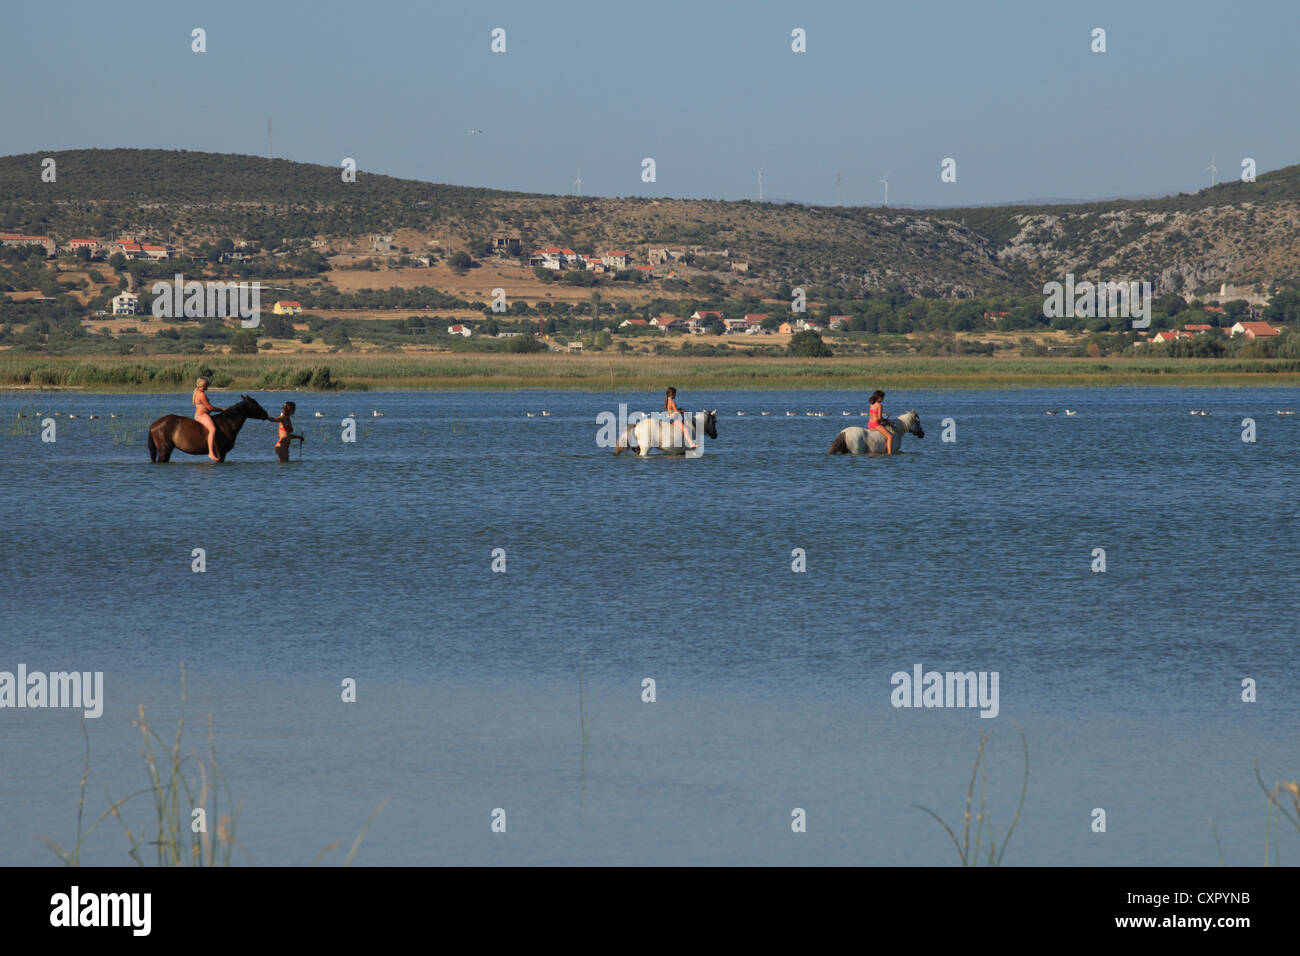 Trois enfants de l'équitation dans les eaux de Vransko jezero (lac de Vrana) près de Pakostane, Croatie. Banque D'Images